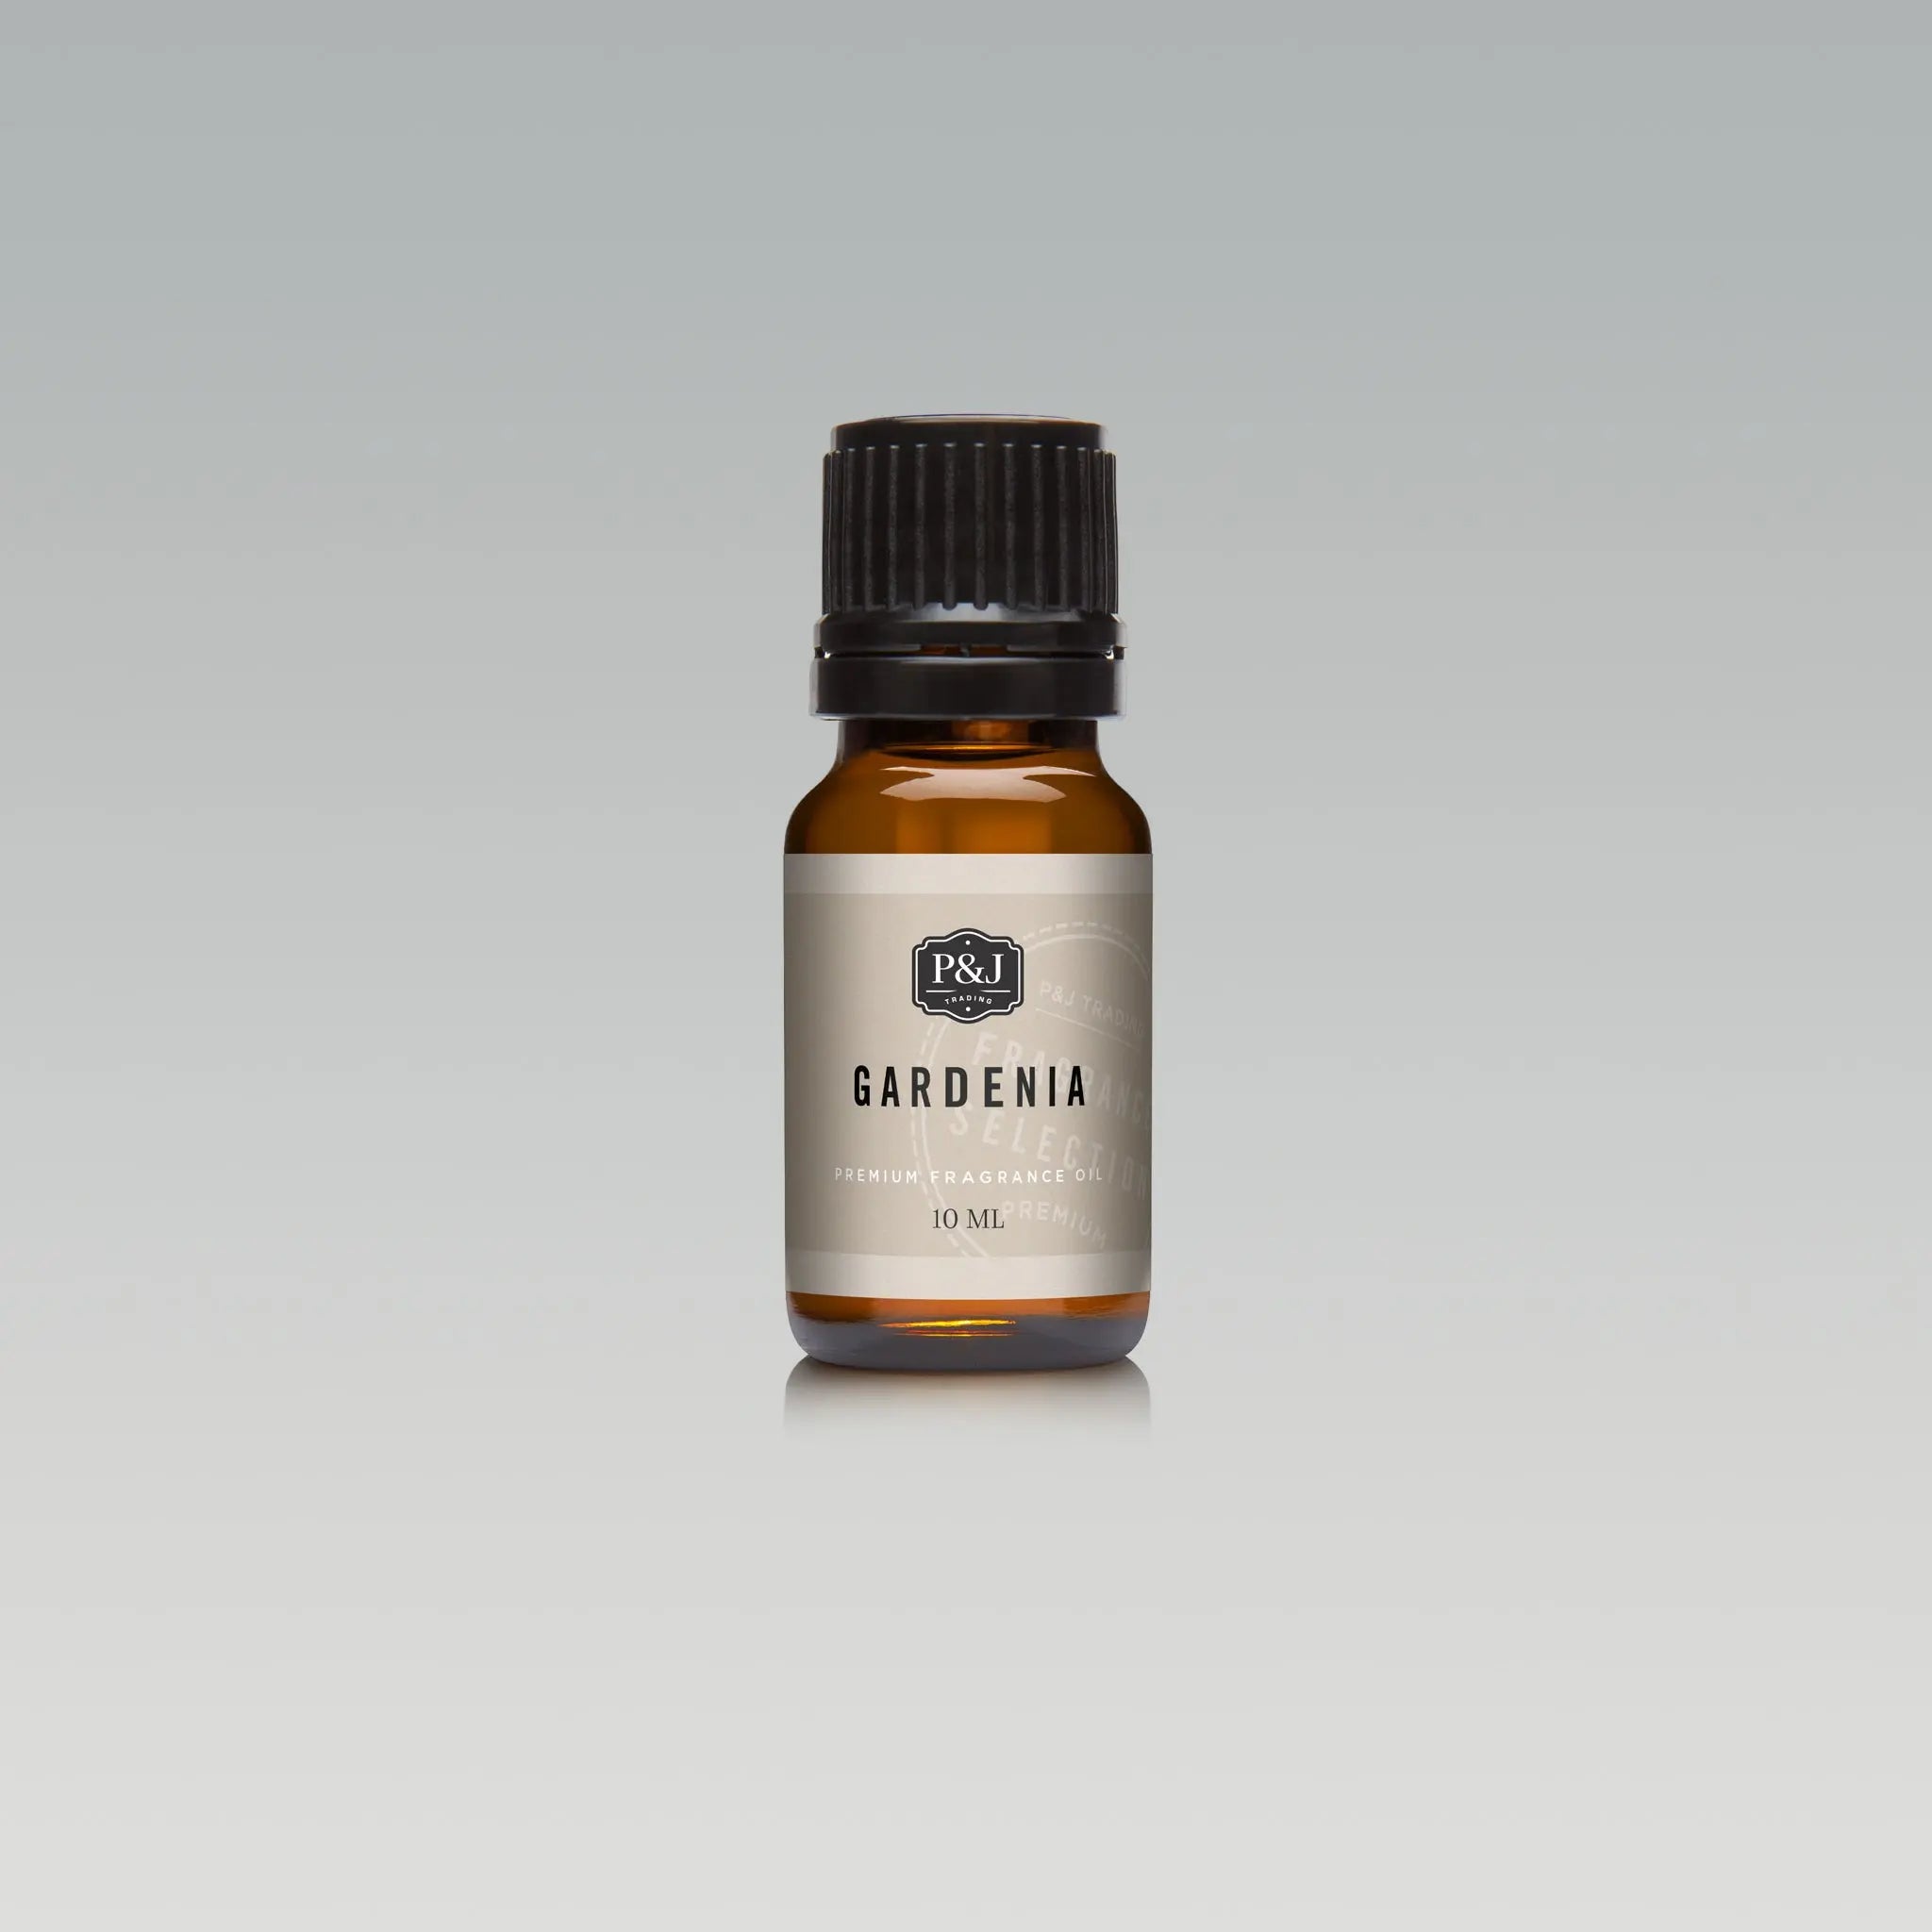 Pair (2) - Magnolia & Gardenia - Premium Fragrance Oil Pair - 10ml